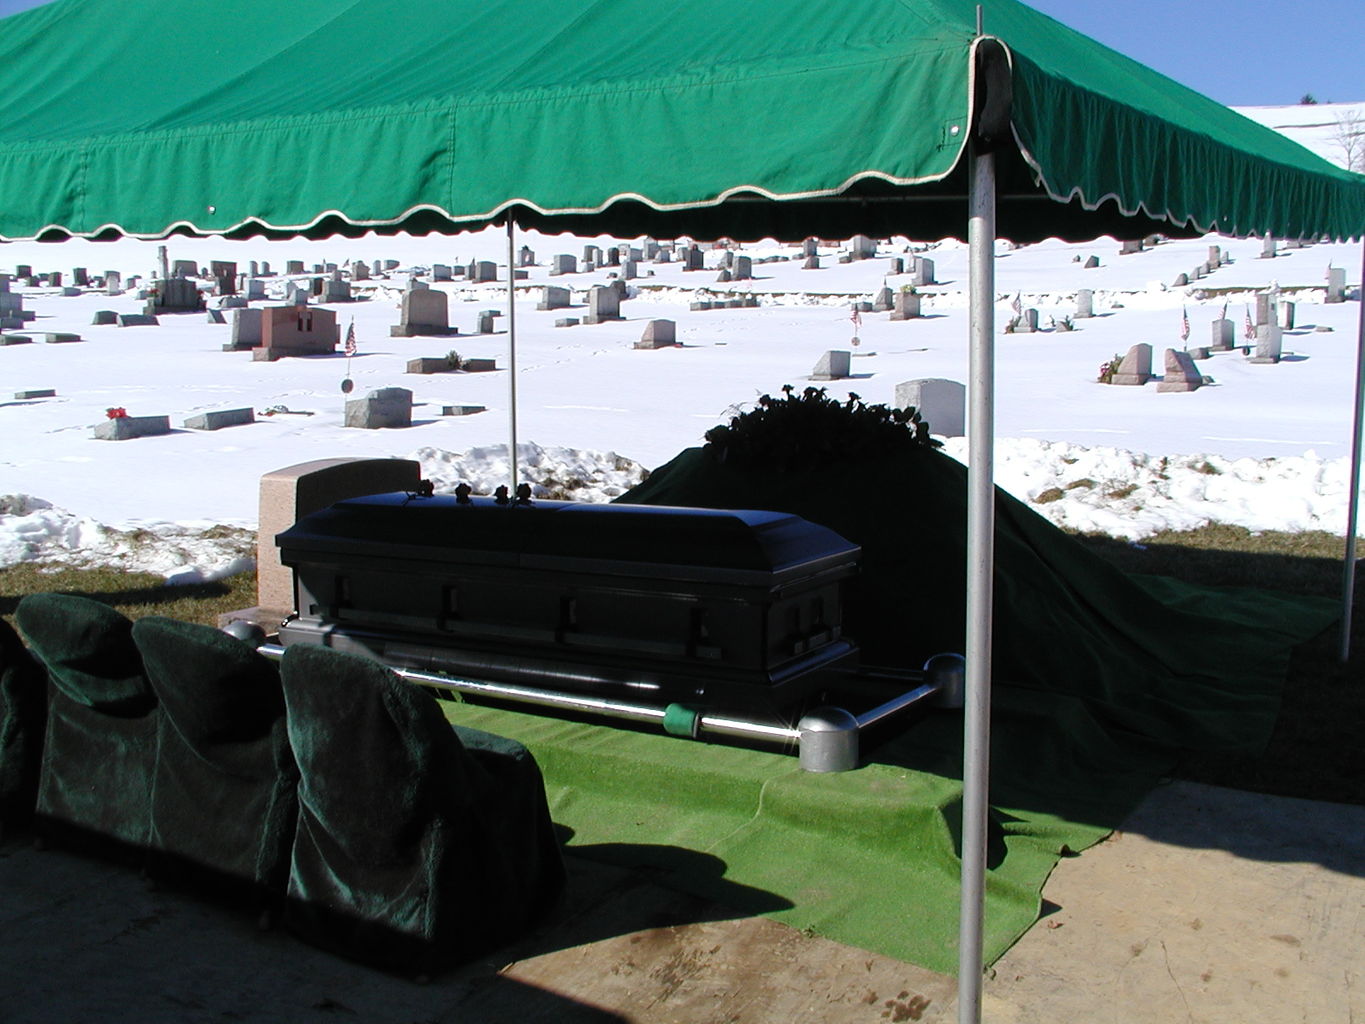 Pop Pop's Funeral
